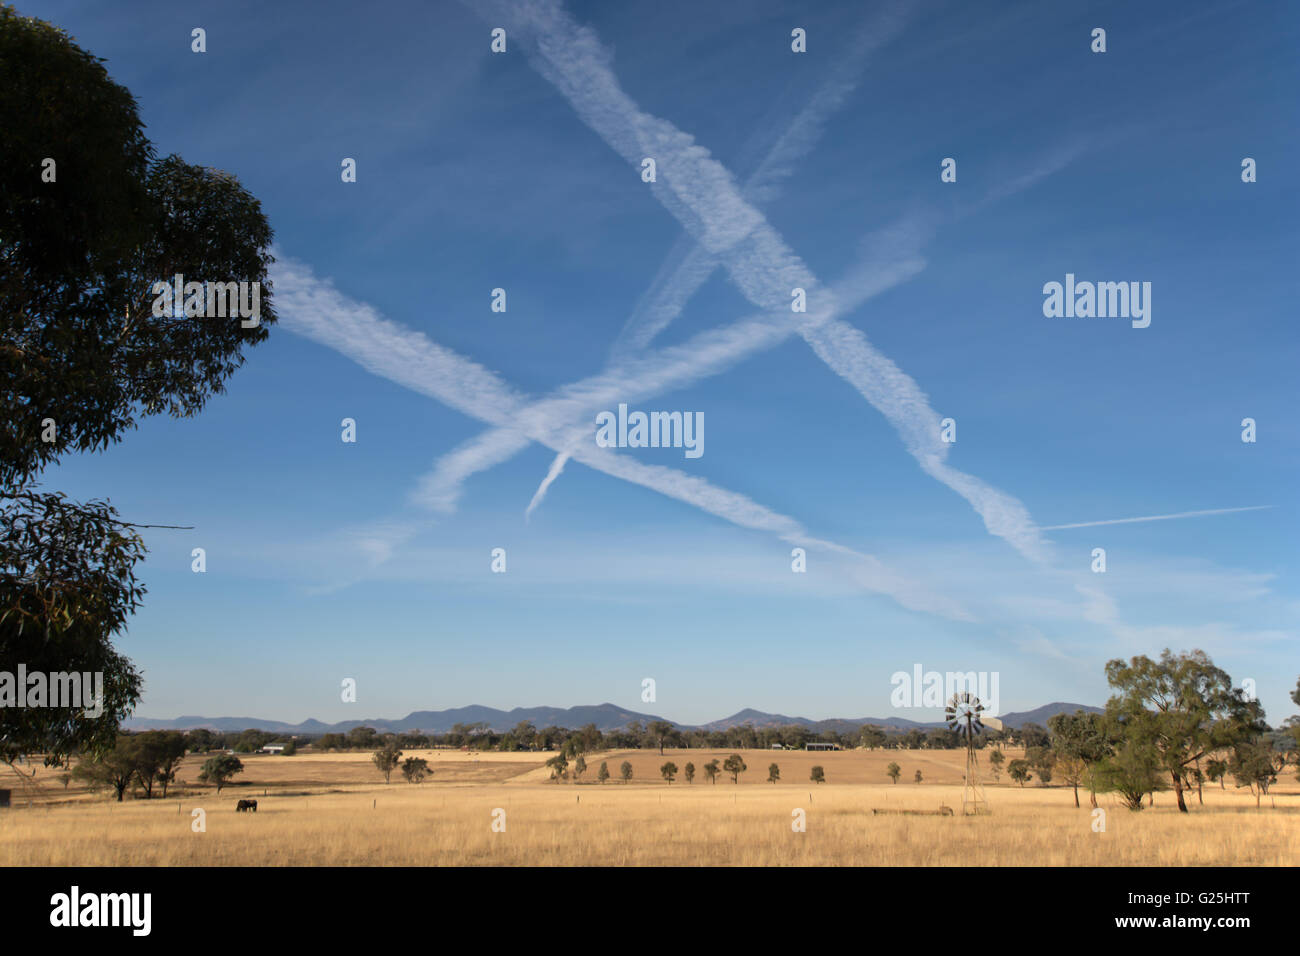 Des traînées de vapeur d'aéronefs au-dessus de terres agricoles, Tamworth NSW Australie. Banque D'Images